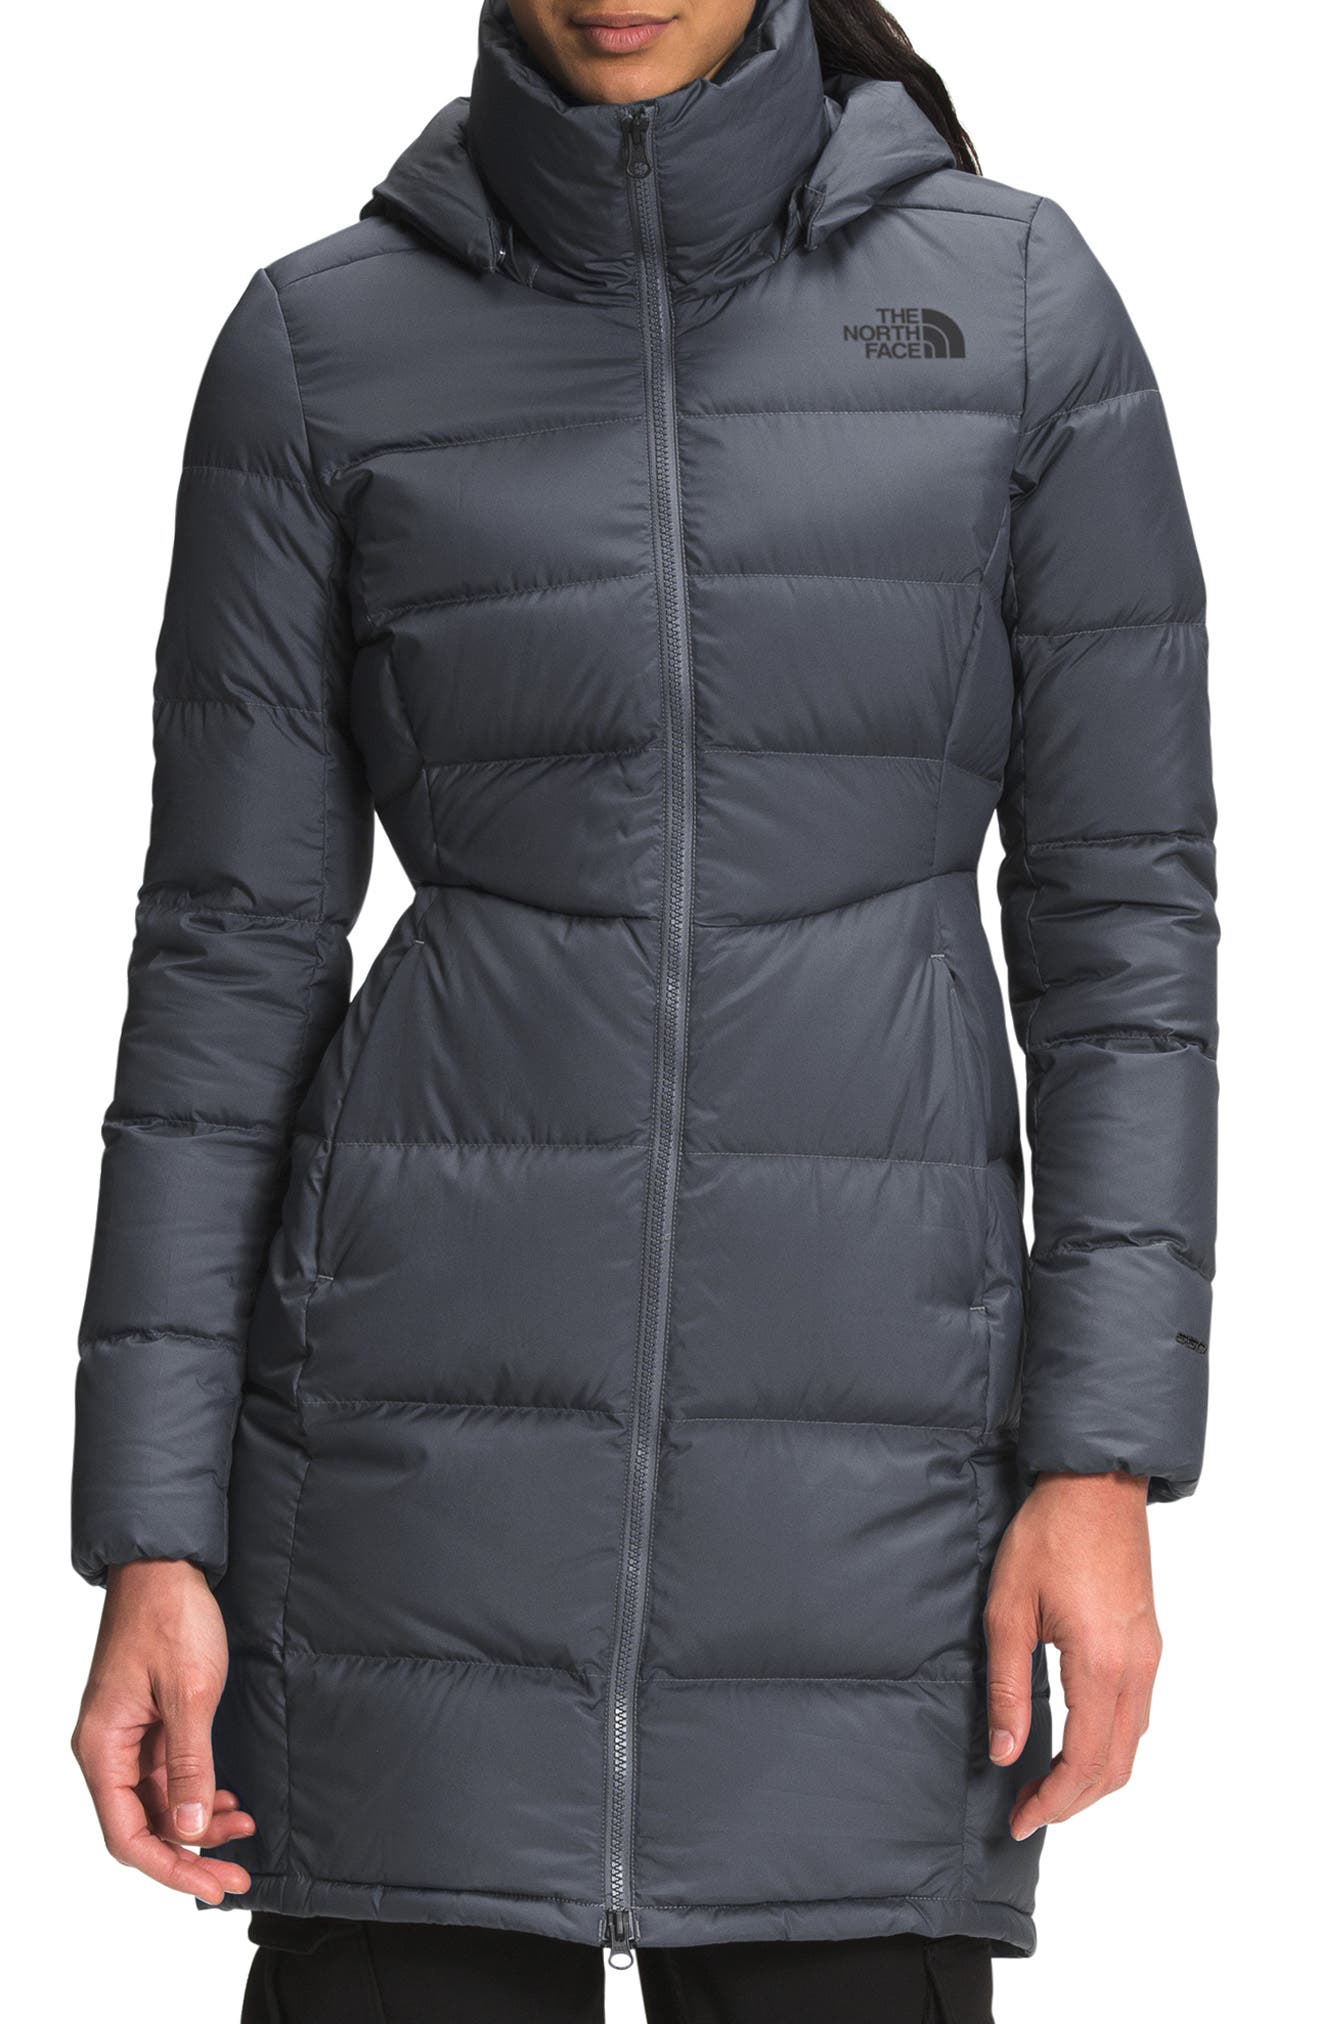 Chic Womens Winter Hooded Coat Long Jacket Cardigan Outwear Parka Overcoat L-4XL 